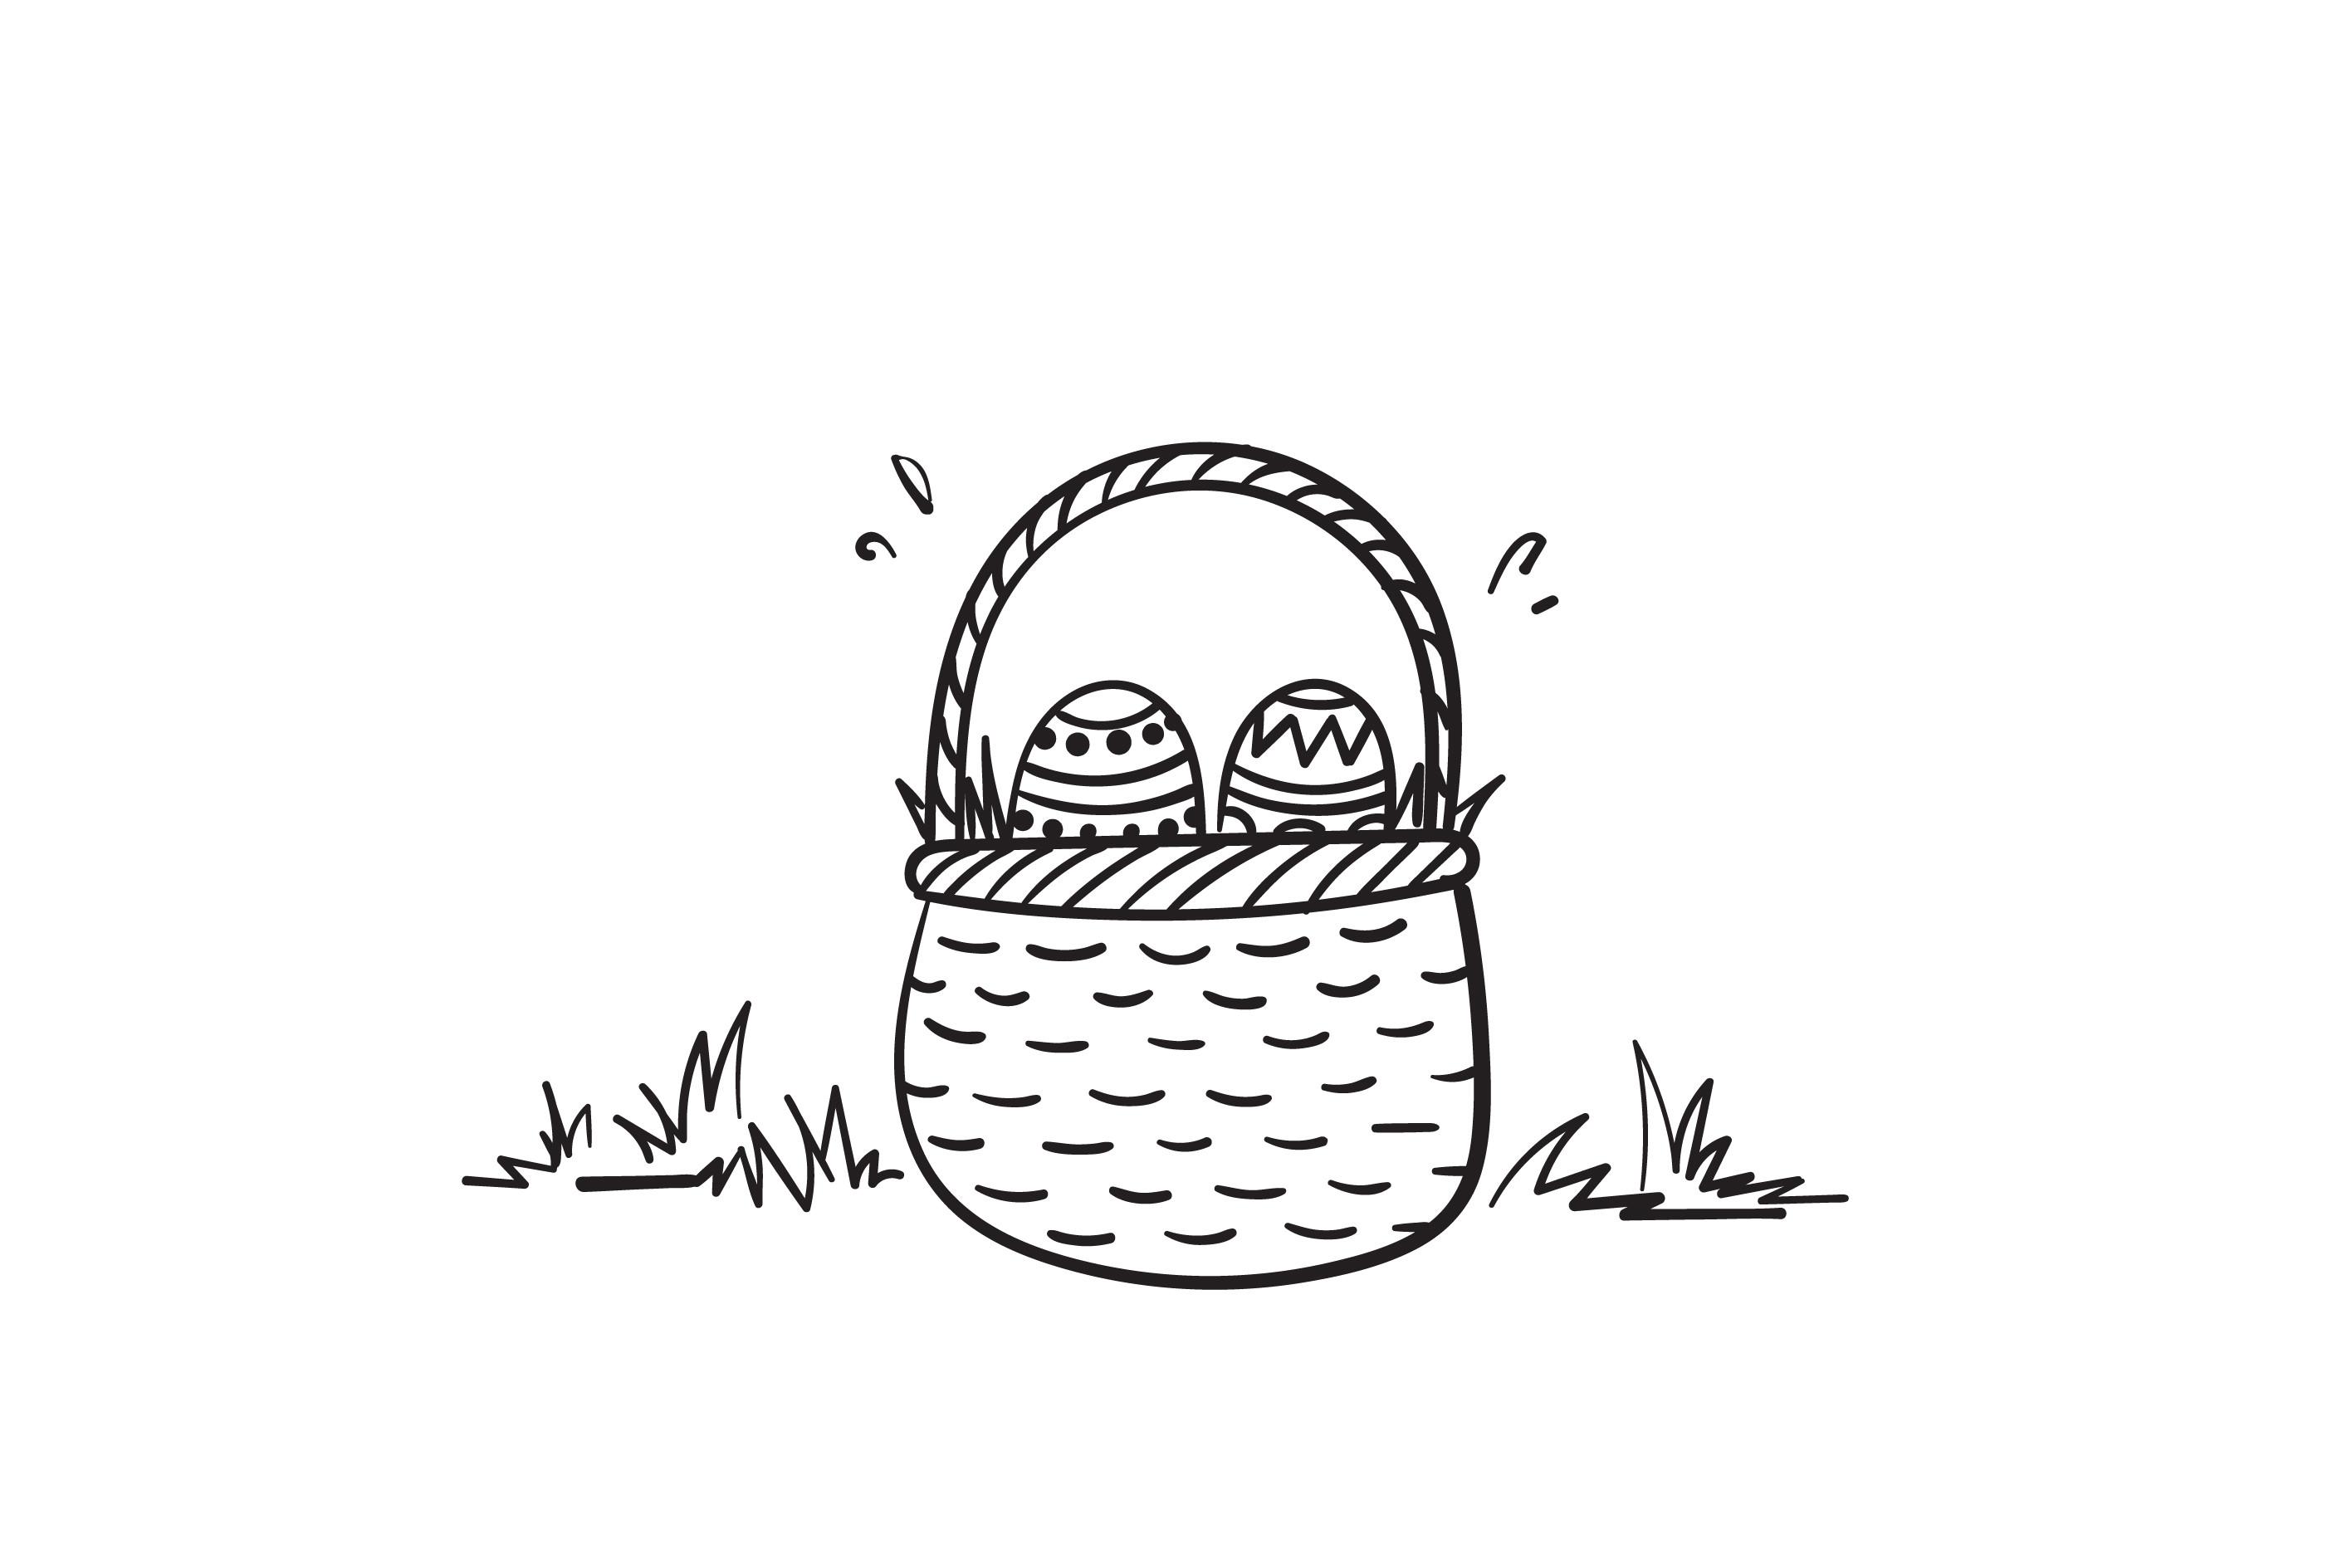 Doodle Easter Egg in Basket Illustration